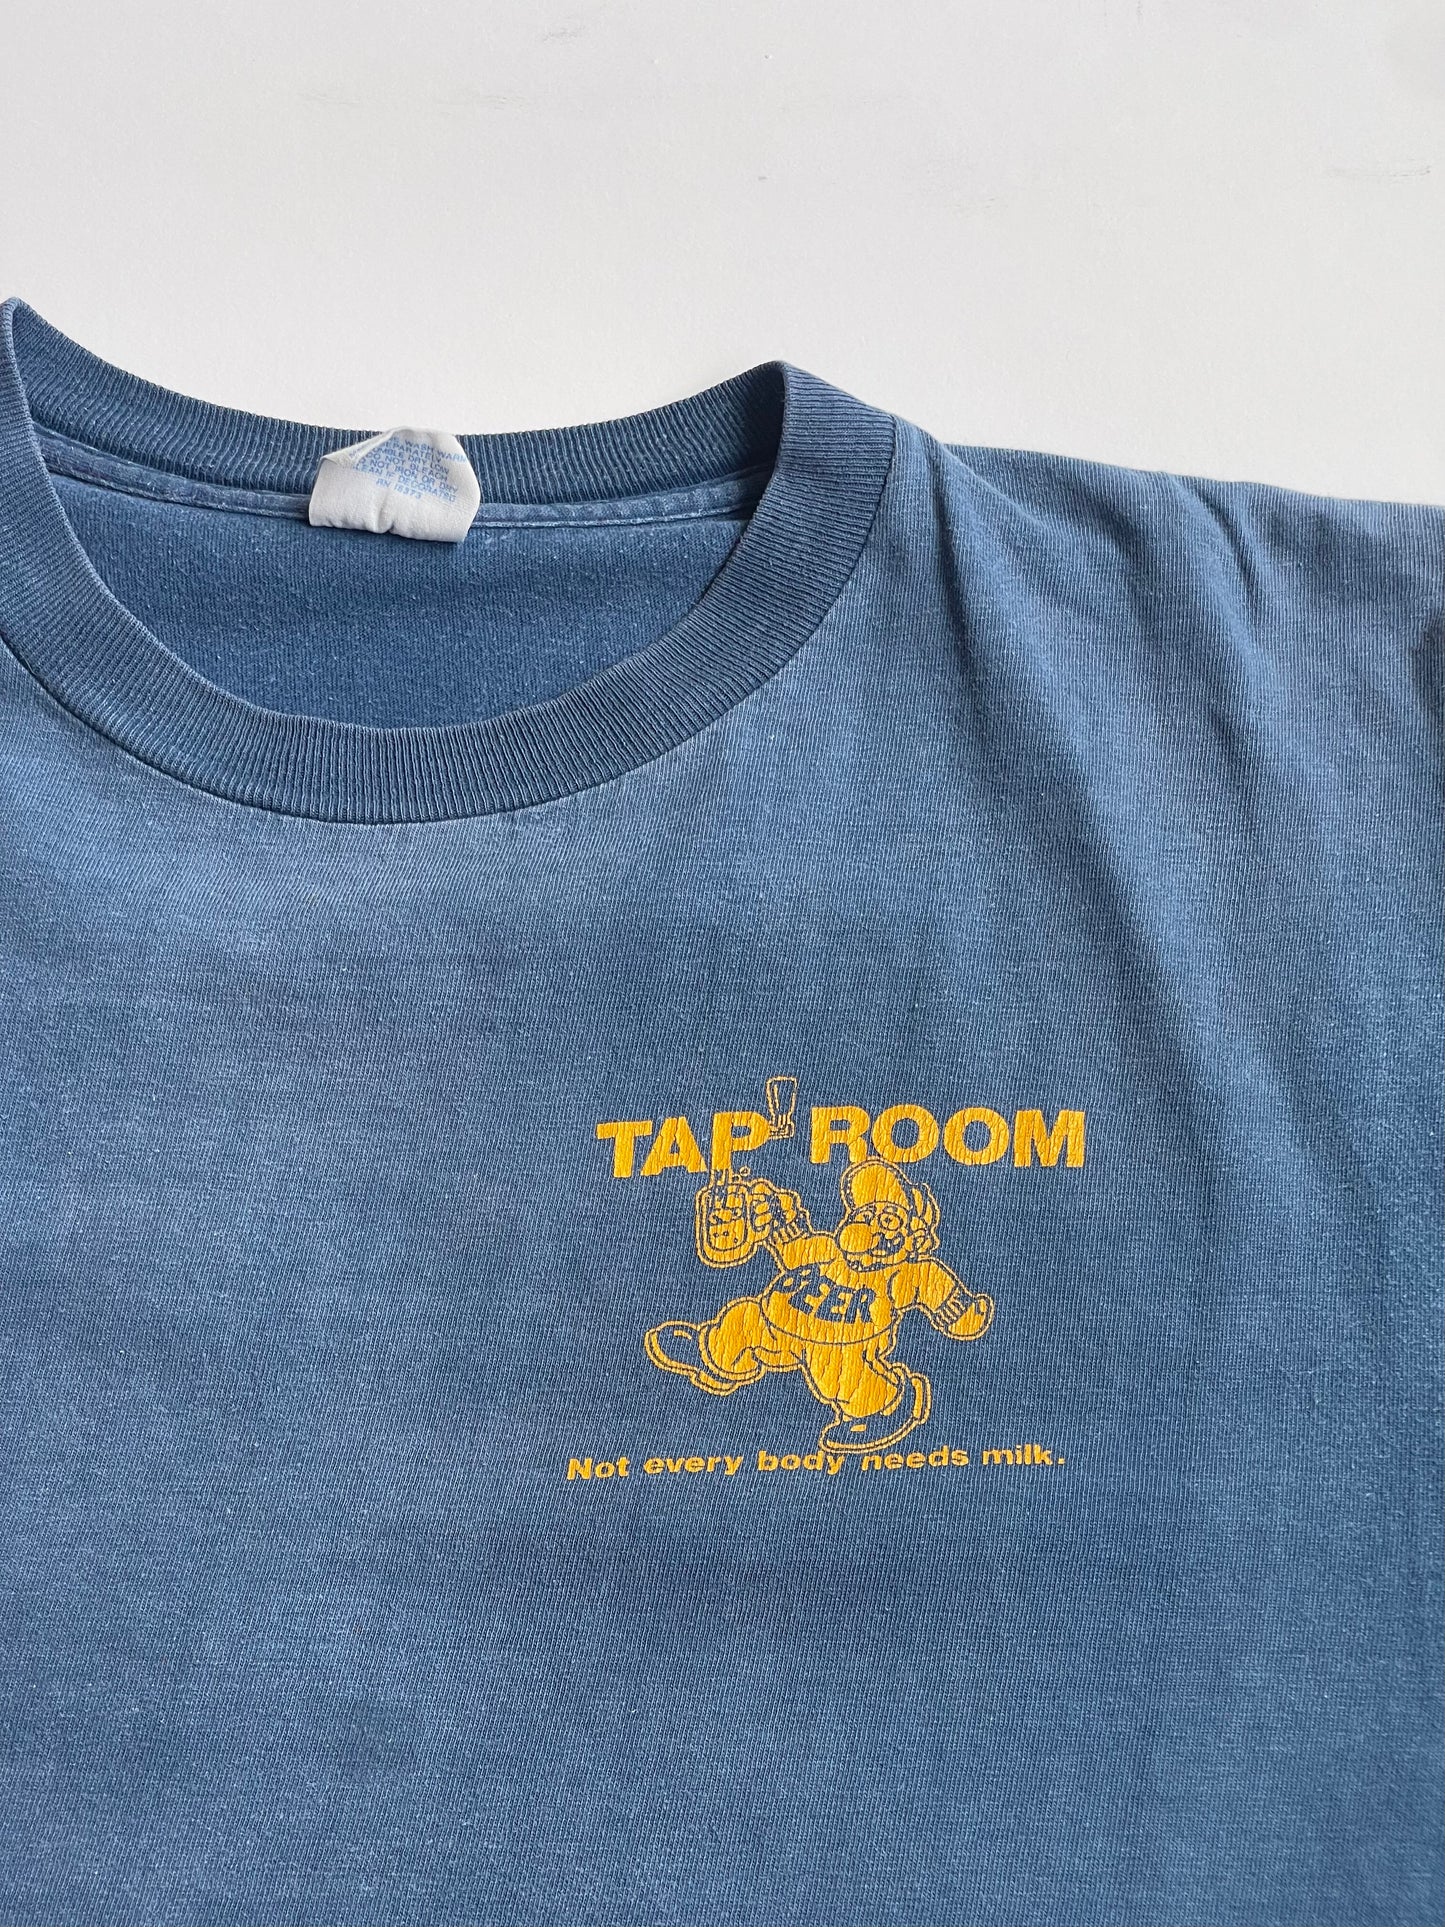 Vintage Tap Room Beer Tee